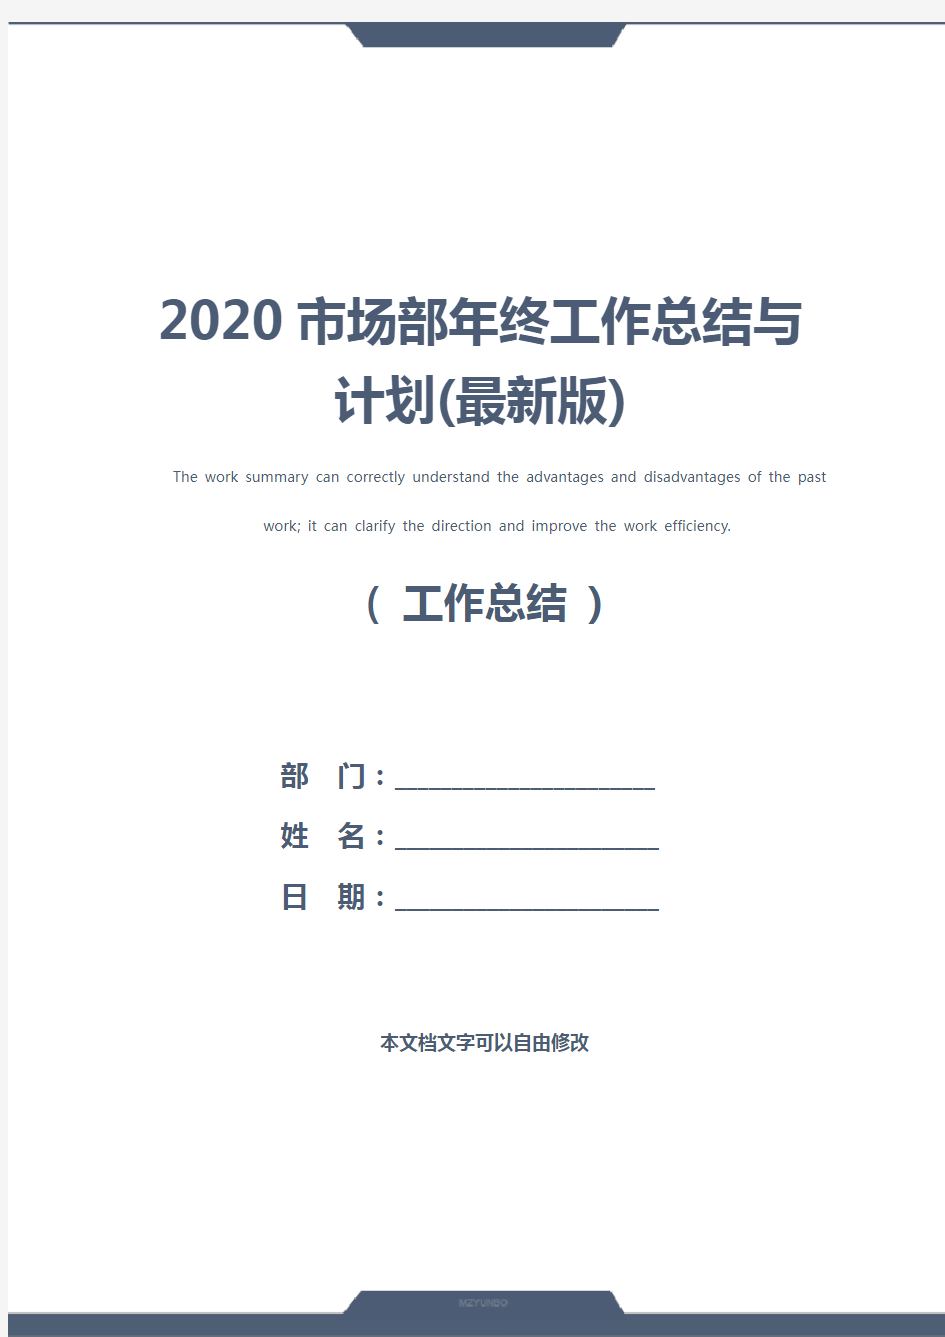 2020市场部年终工作总结与计划(最新版)